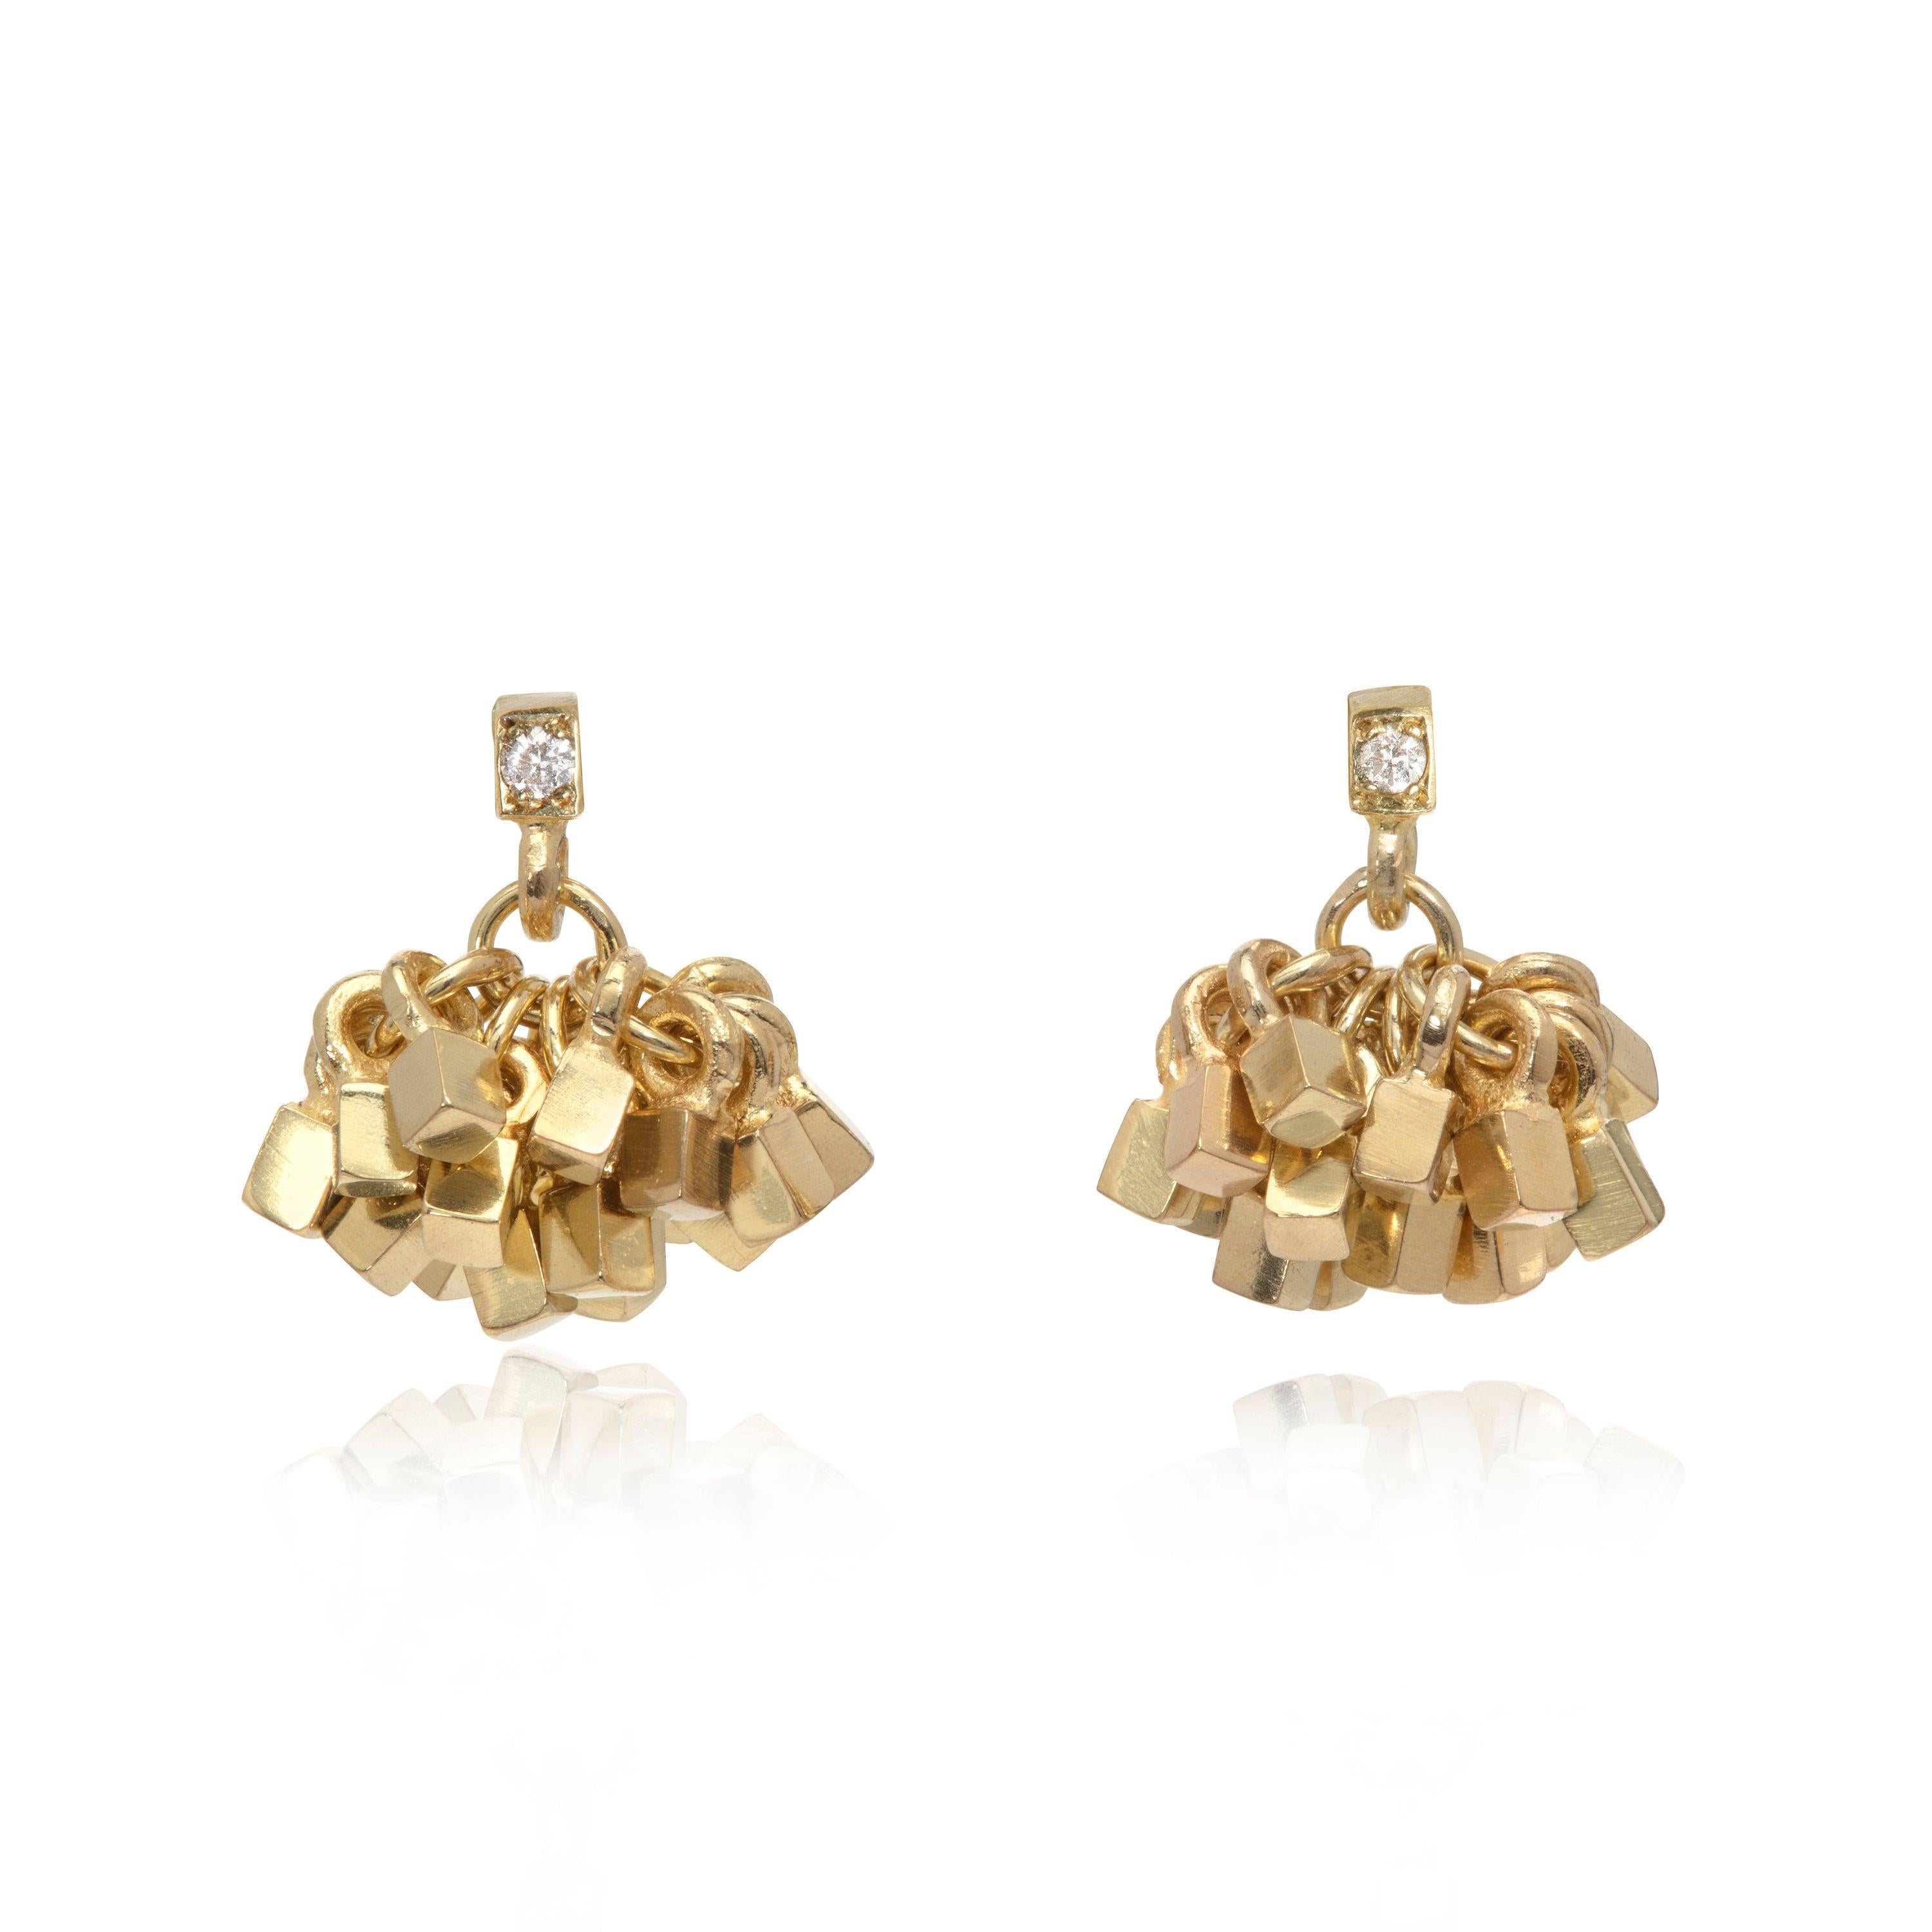 Estos elegantes y llamativos pendientes de oro de 18 quilates han sido diseñados y fabricados por la joyera británica Sarah Pulvertaft. Debajo de la parte superior cuadrada acentuada con diamantes hay un racimo de 